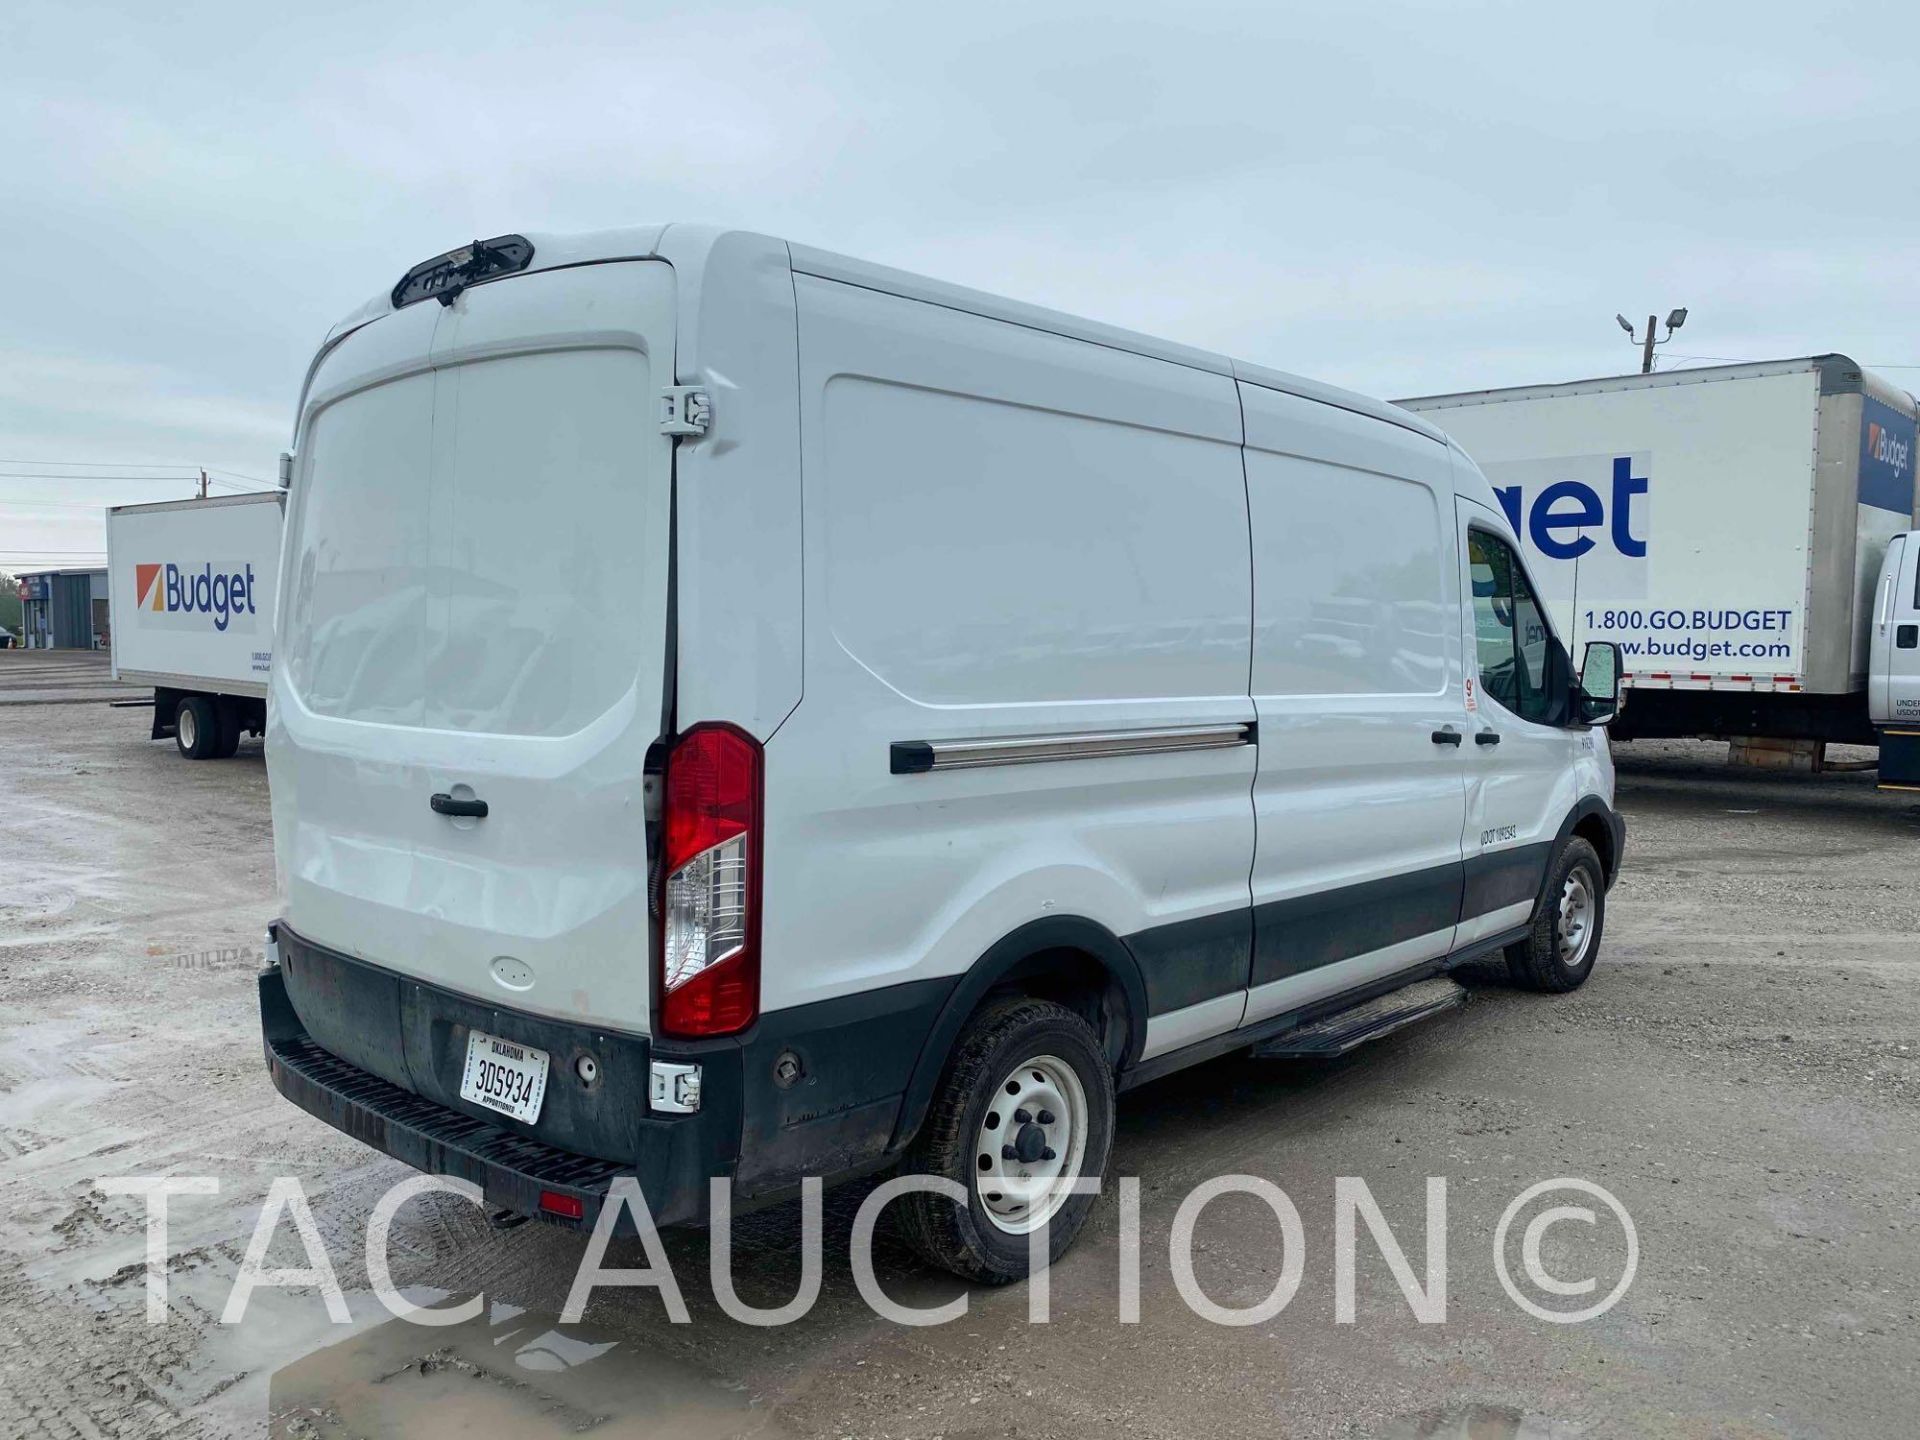 2019 Transit 150 Cargo Van - Image 4 of 50